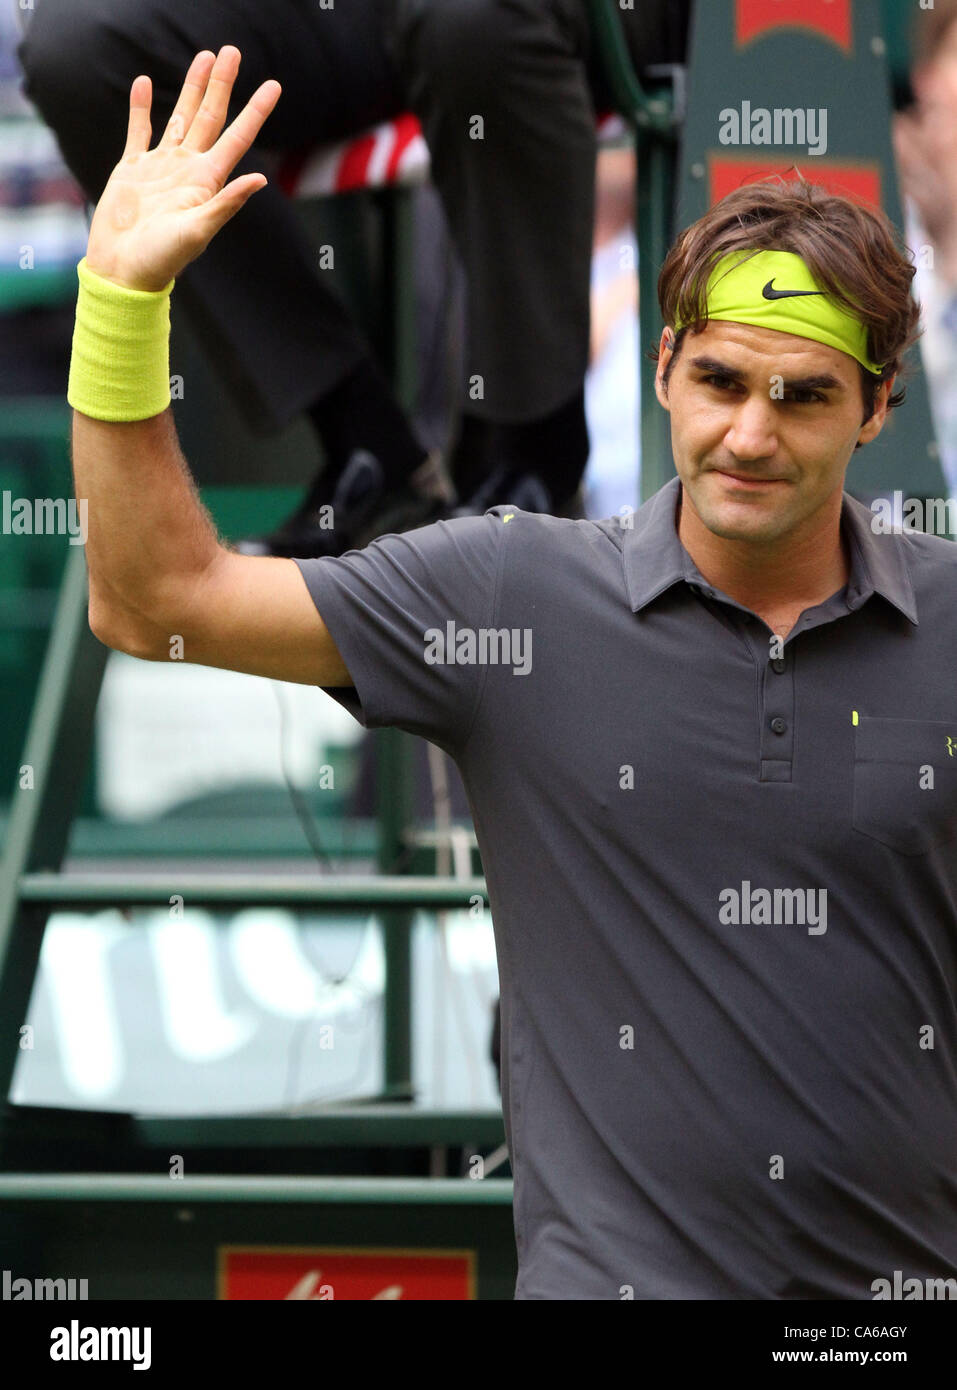 15.06.2012. Halle, Deutschland. Schweizer Roger Federer erhebt seine Hand nach seinem Sieg über Kanadas Raonic beim ATP-Tennisturnier in Halle (Westfalen), Deutschland, 15. Juni 2012. Stockfoto